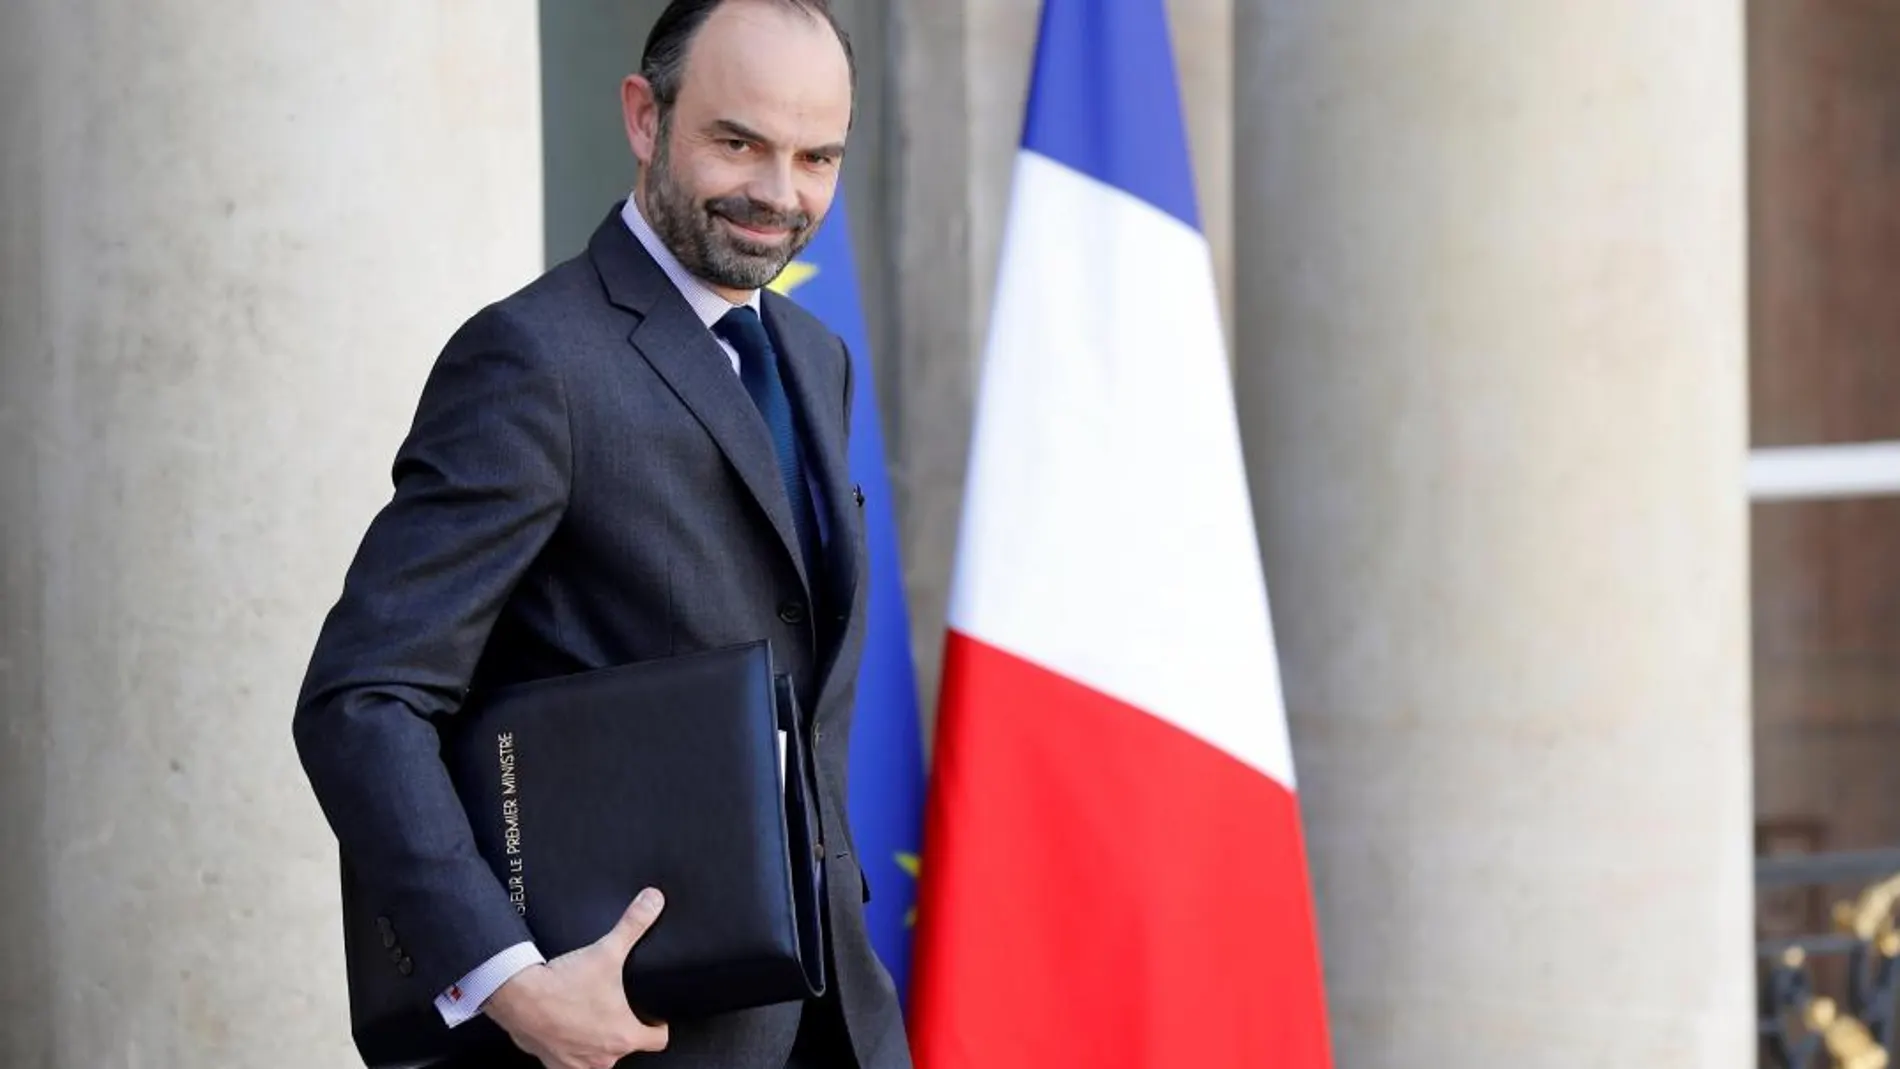 El primer ministro francés, Edouard Philippe, abandona el palacio del Elíseo tras una reunión del Consejo de ministros